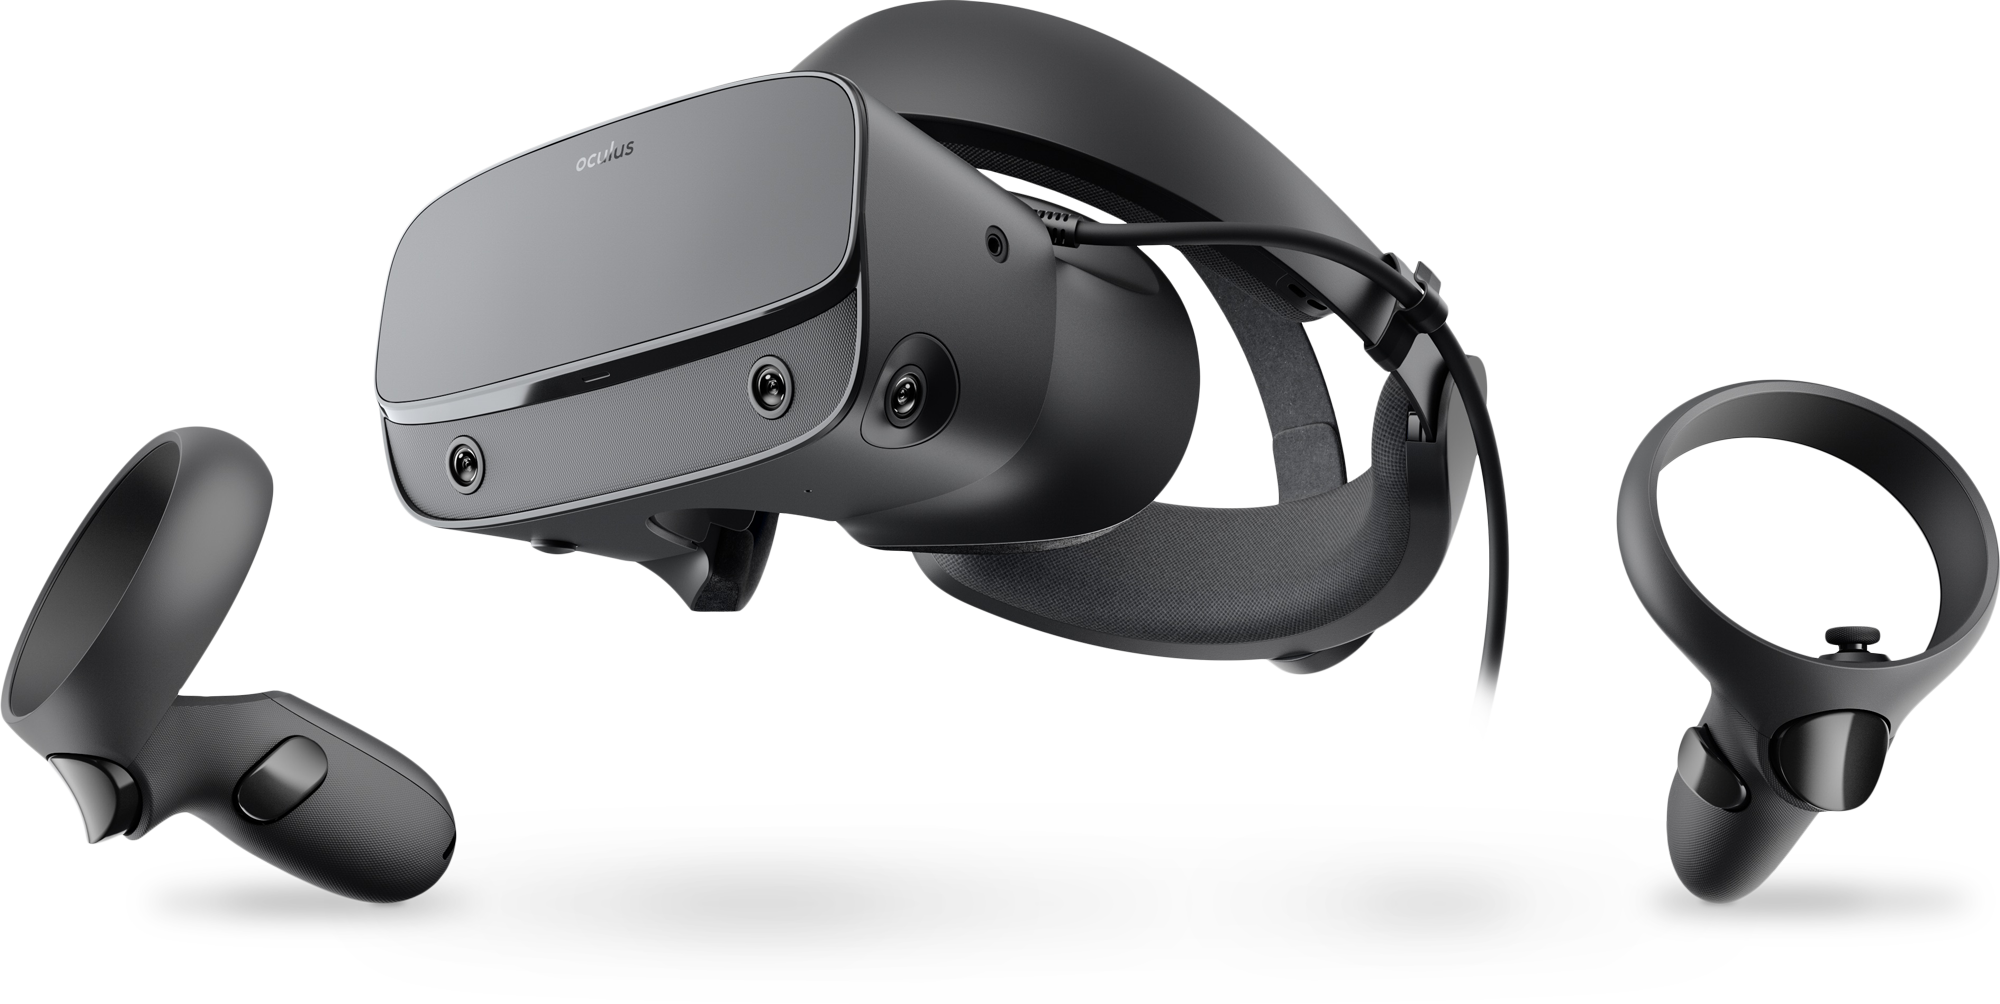 image of oculus rift S VR headset